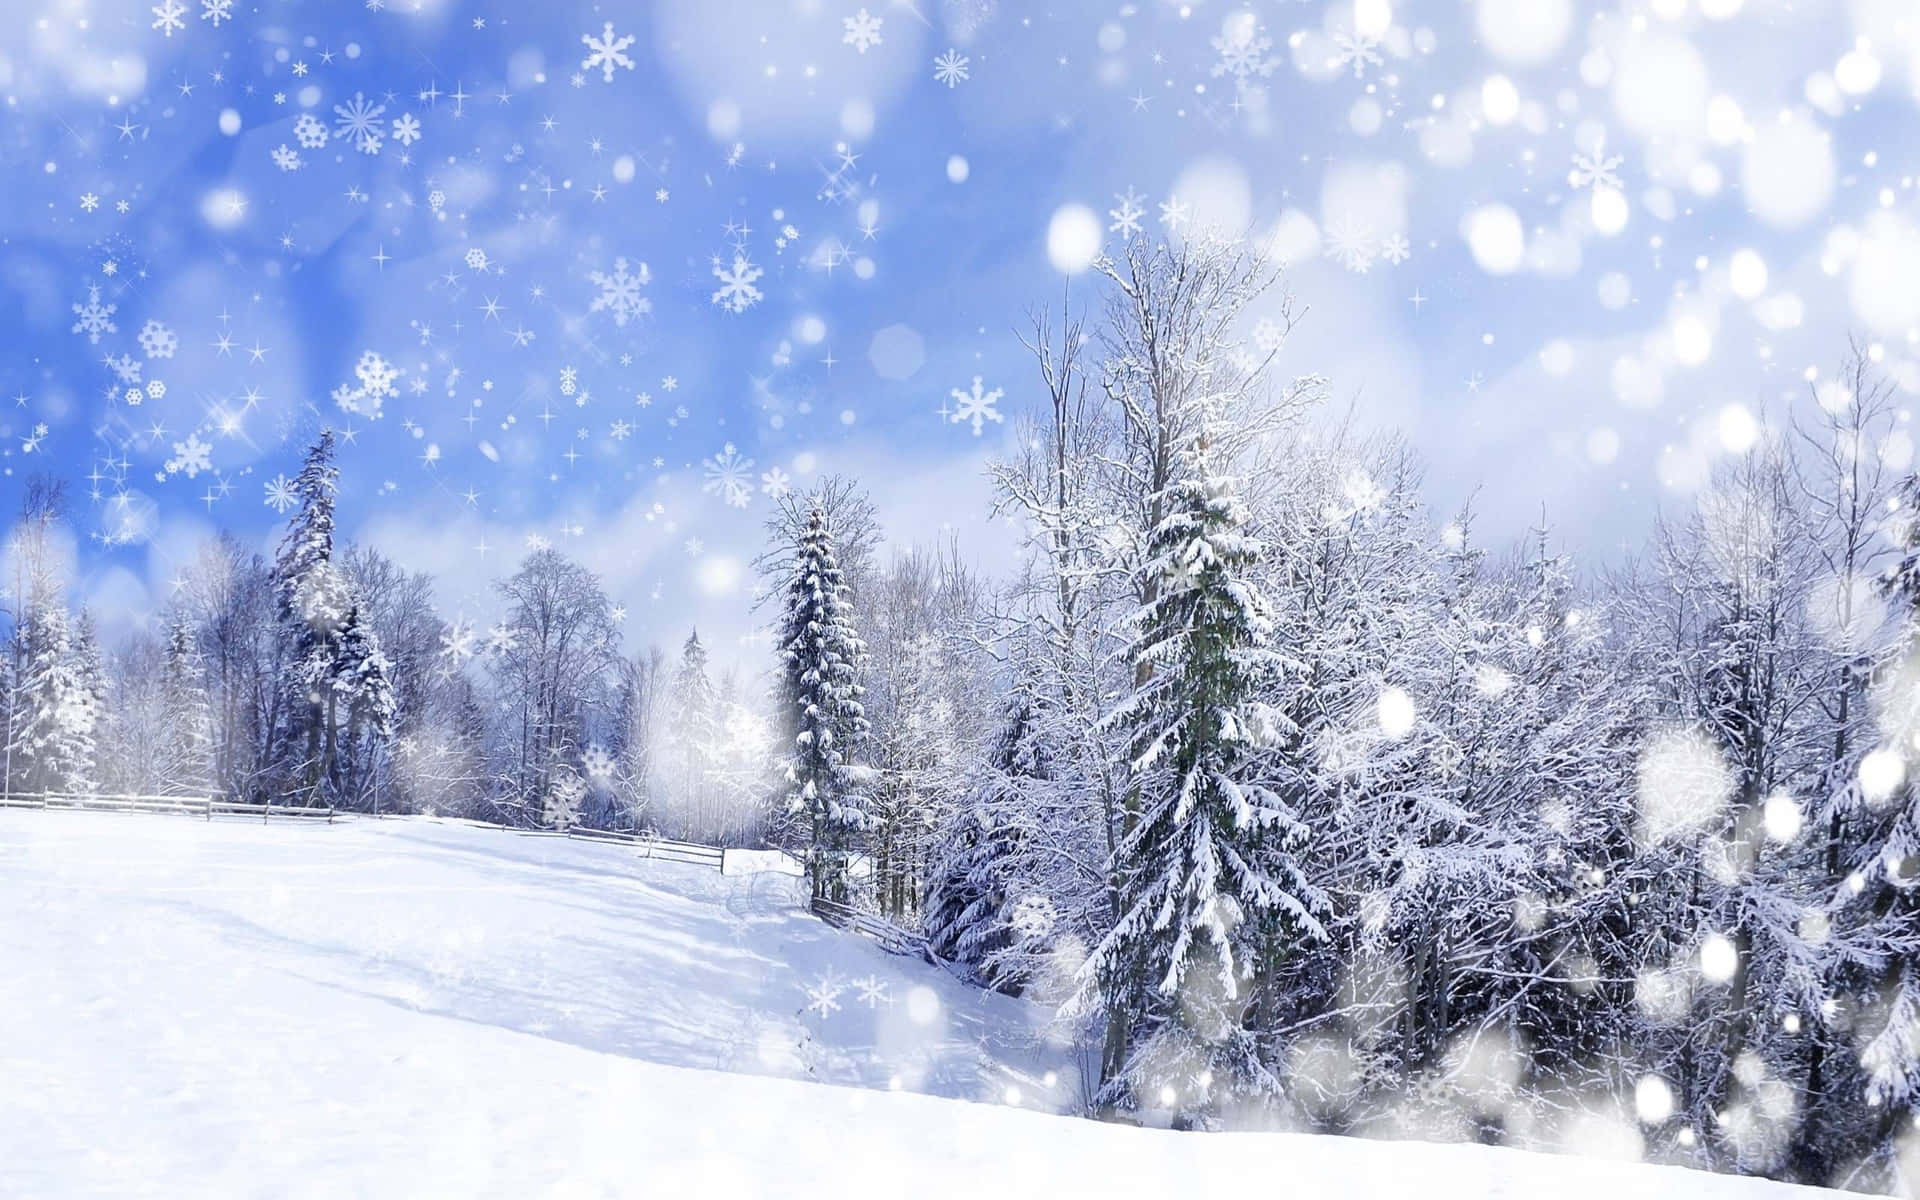 Breathtaking Snowy Landscape in Winter Wonderland Wallpaper